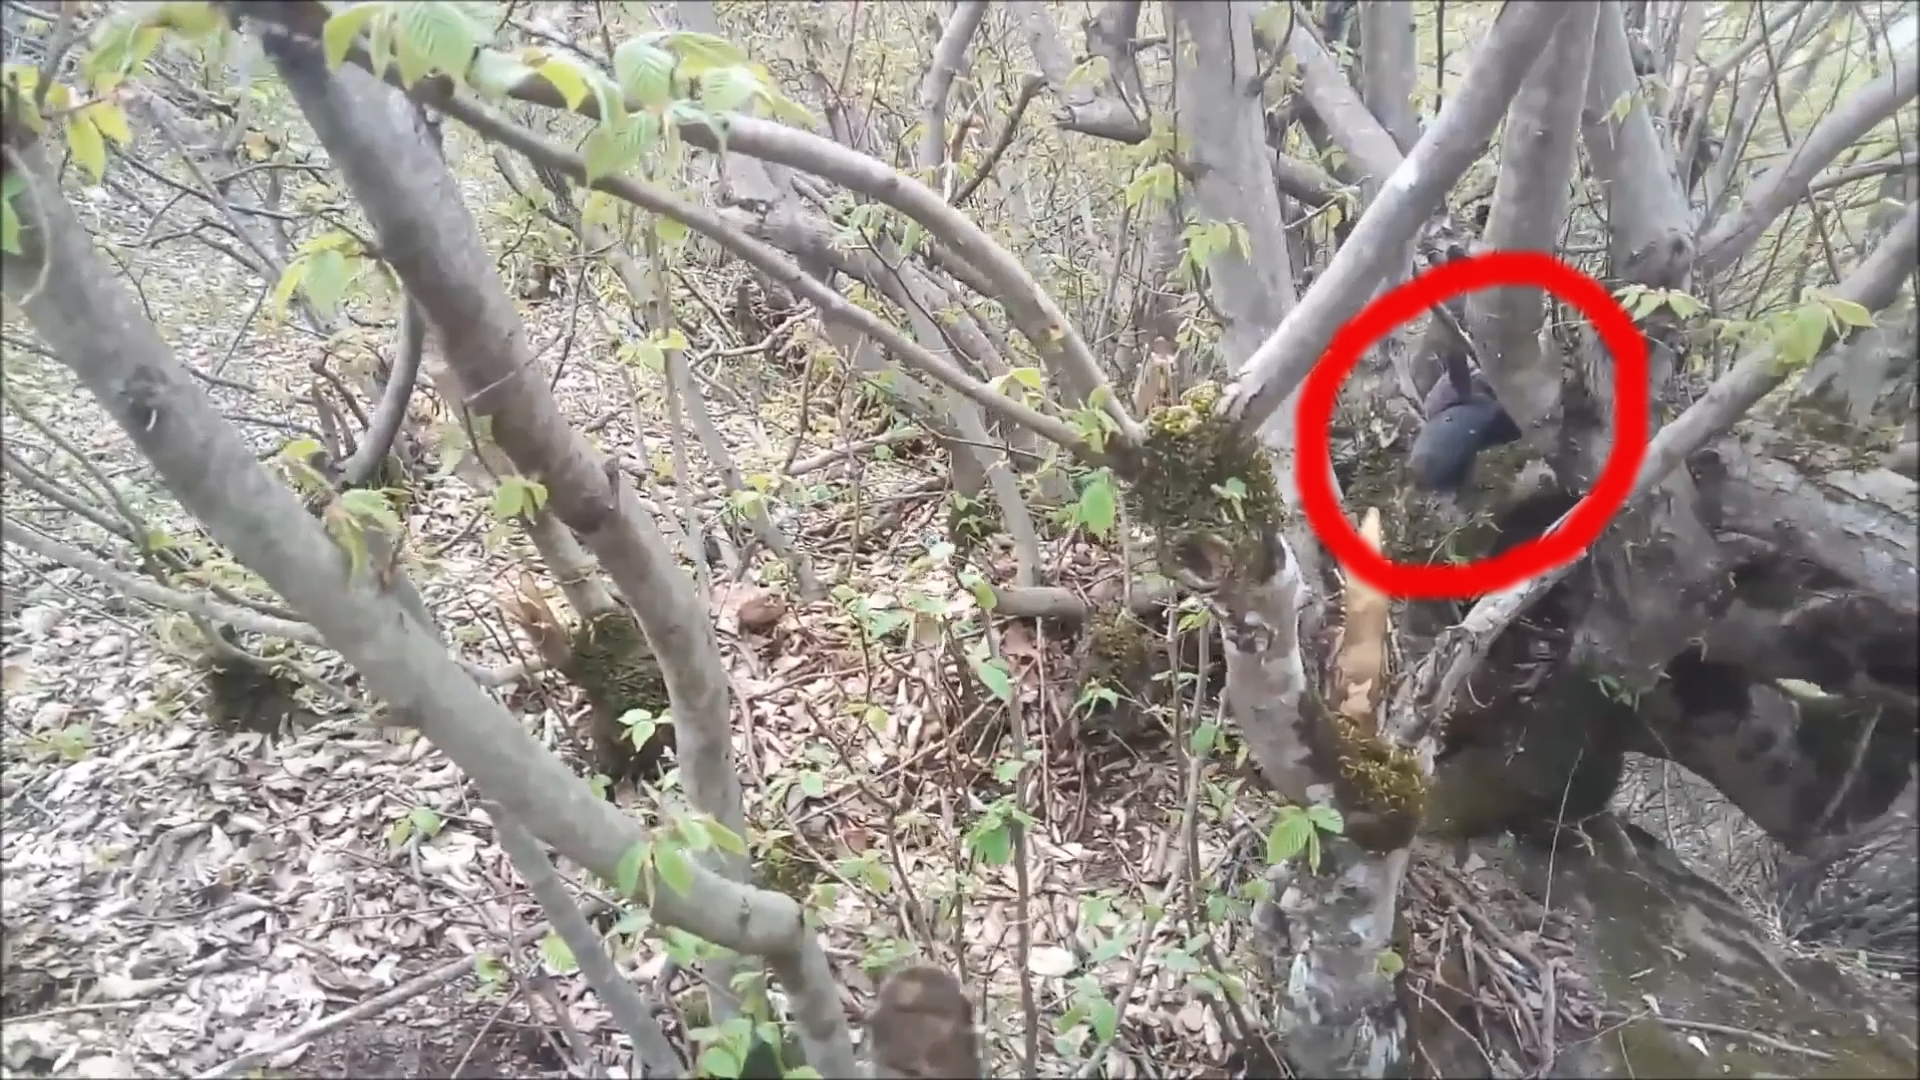 Настоящая Чупакабра снятое на камеру в лесу сибири 28 апреля 2019 г